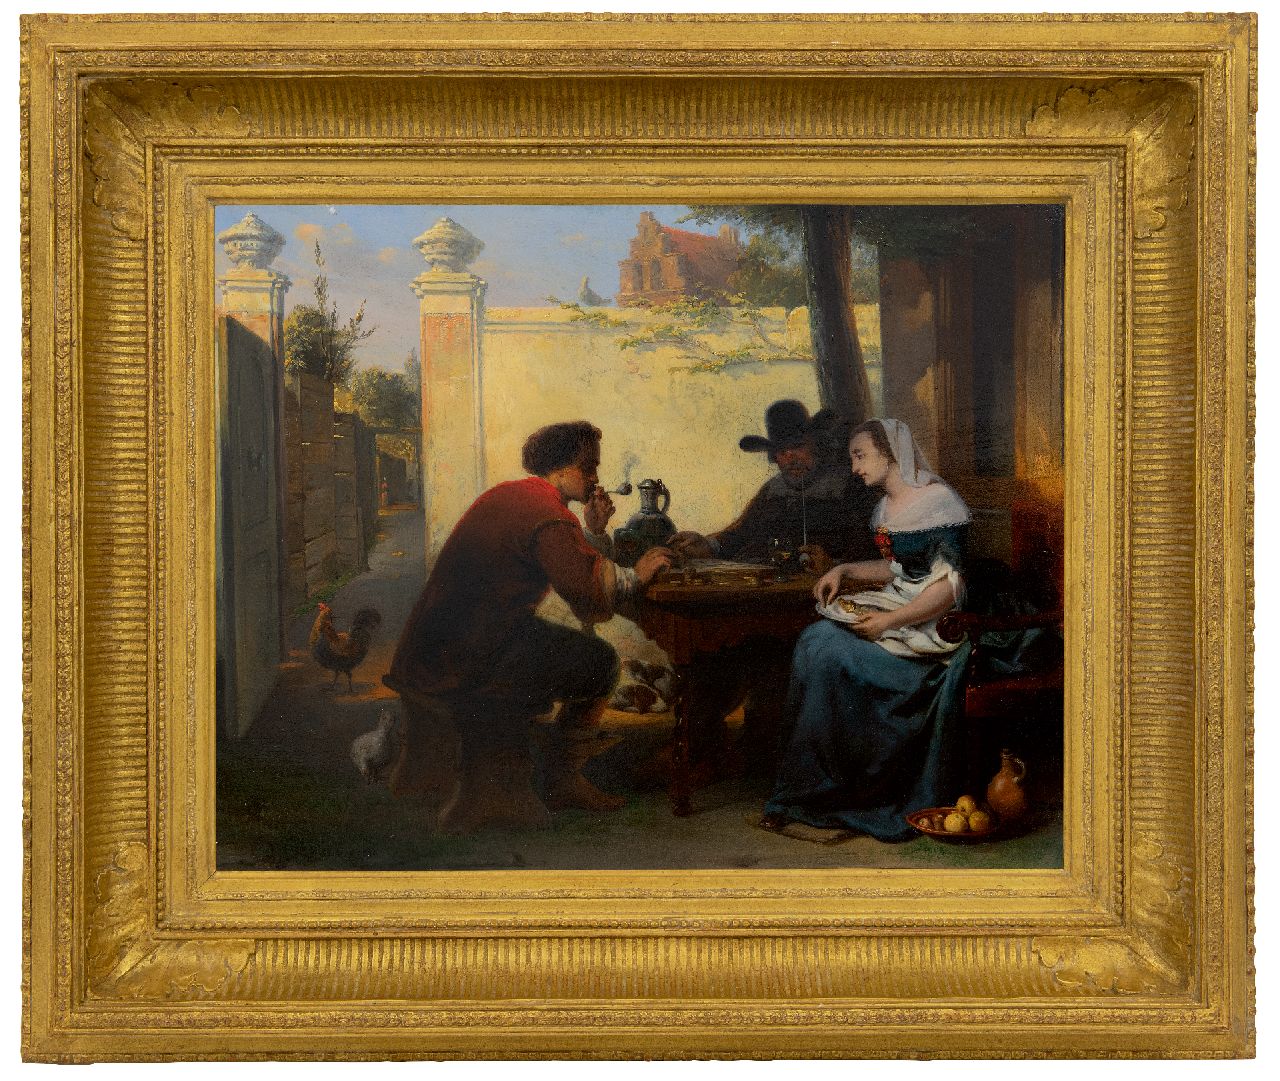 Laar J.H. van de | Jan Hendrik van de Laar | Schilderijen te koop aangeboden | Damspel op de binnenplaats, olieverf op paneel 40,8 x 51,1 cm, gesigneerd links van het midden. op bankje en gedateerd 1864